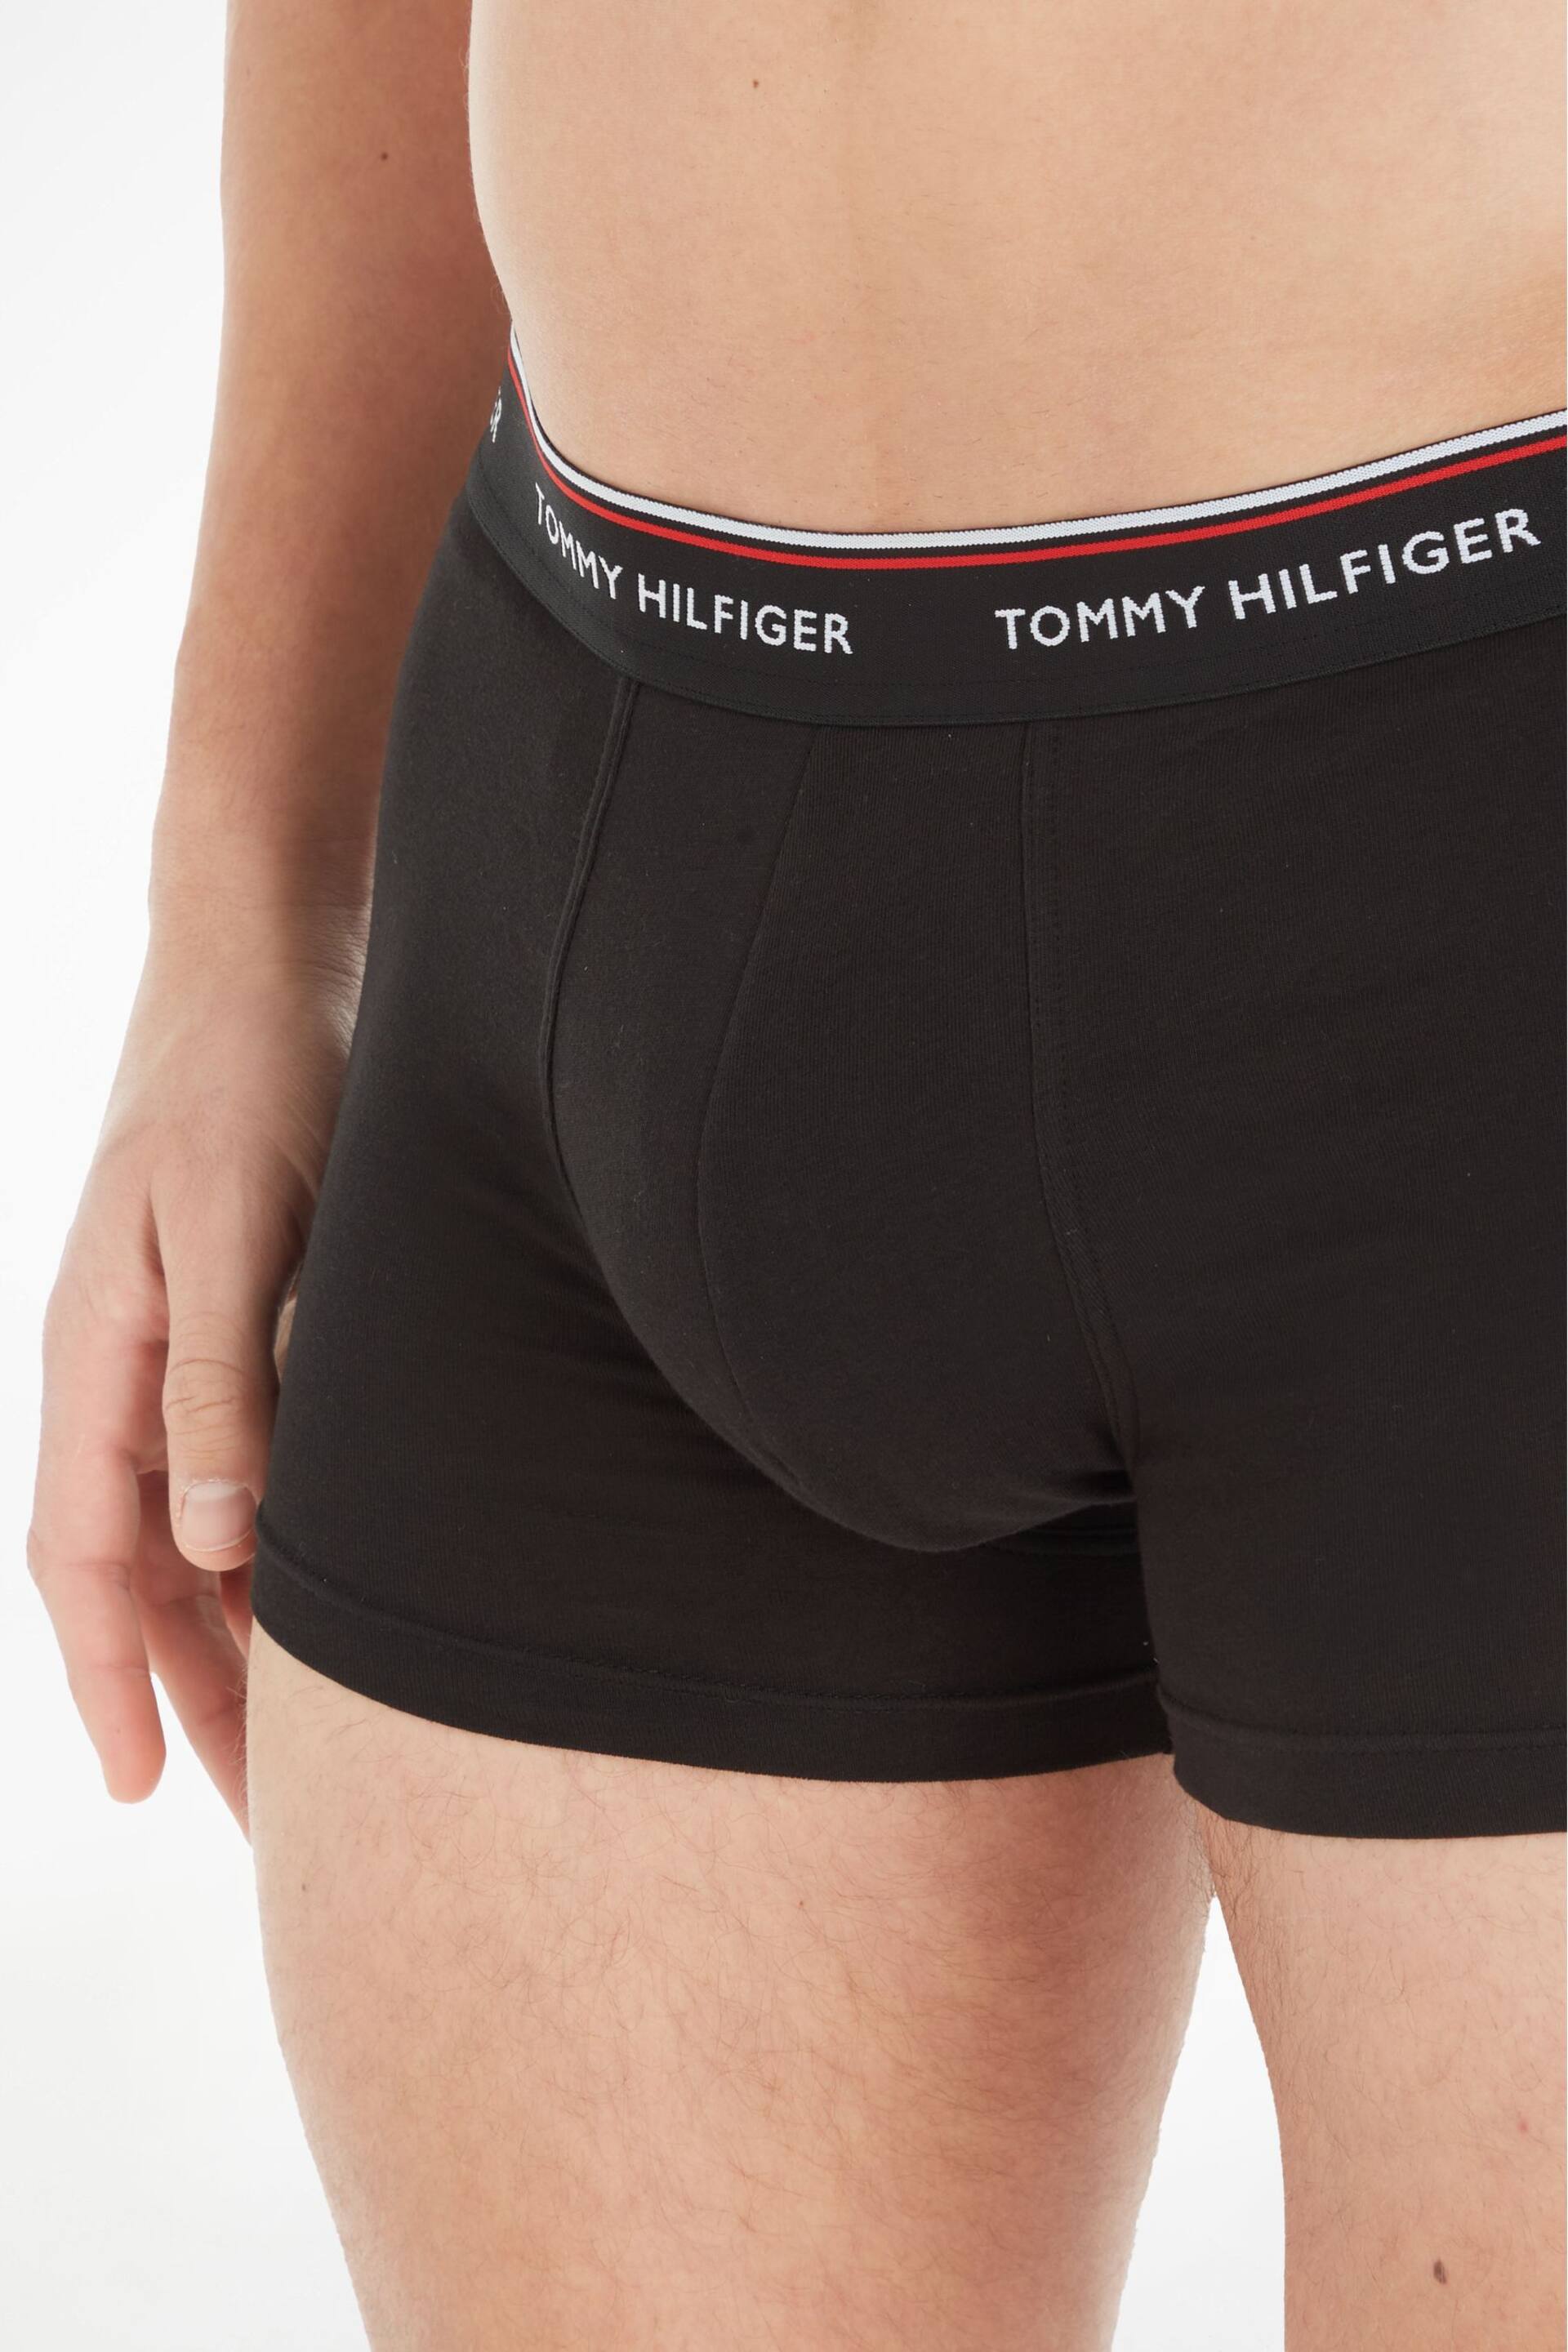 Tommy Hilfiger Black/Grey Trunks 3Pk - Image 4 of 6